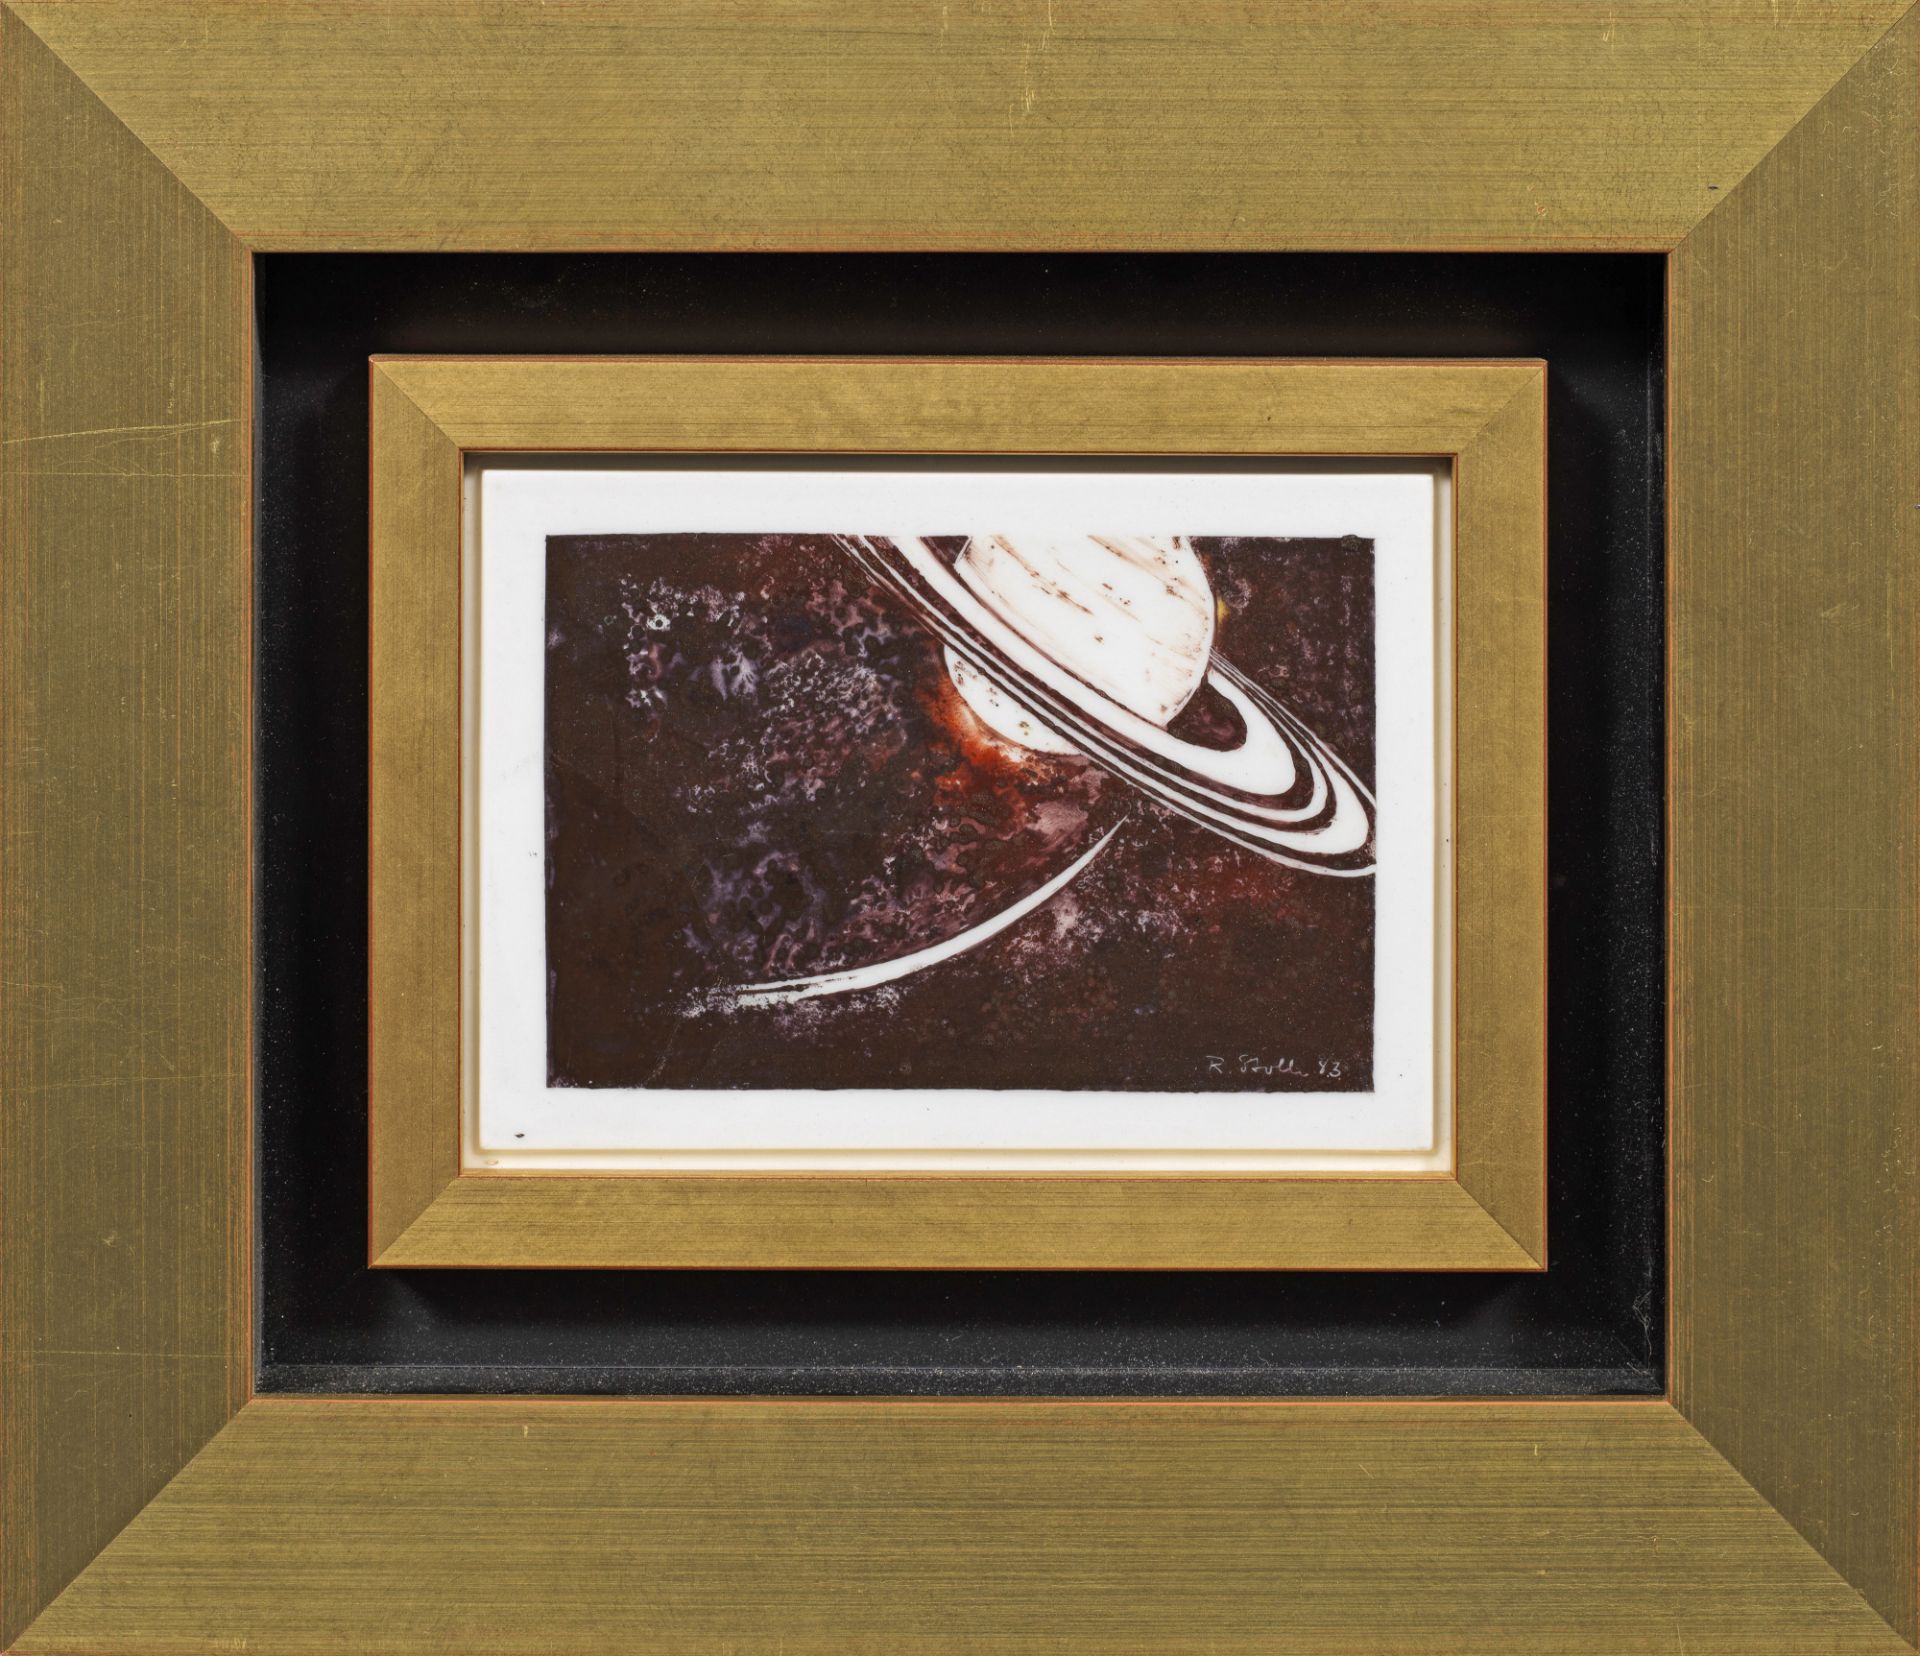 Porzellanbild "Saturn in seiner Umlaufbahn" von Rudi Stolle